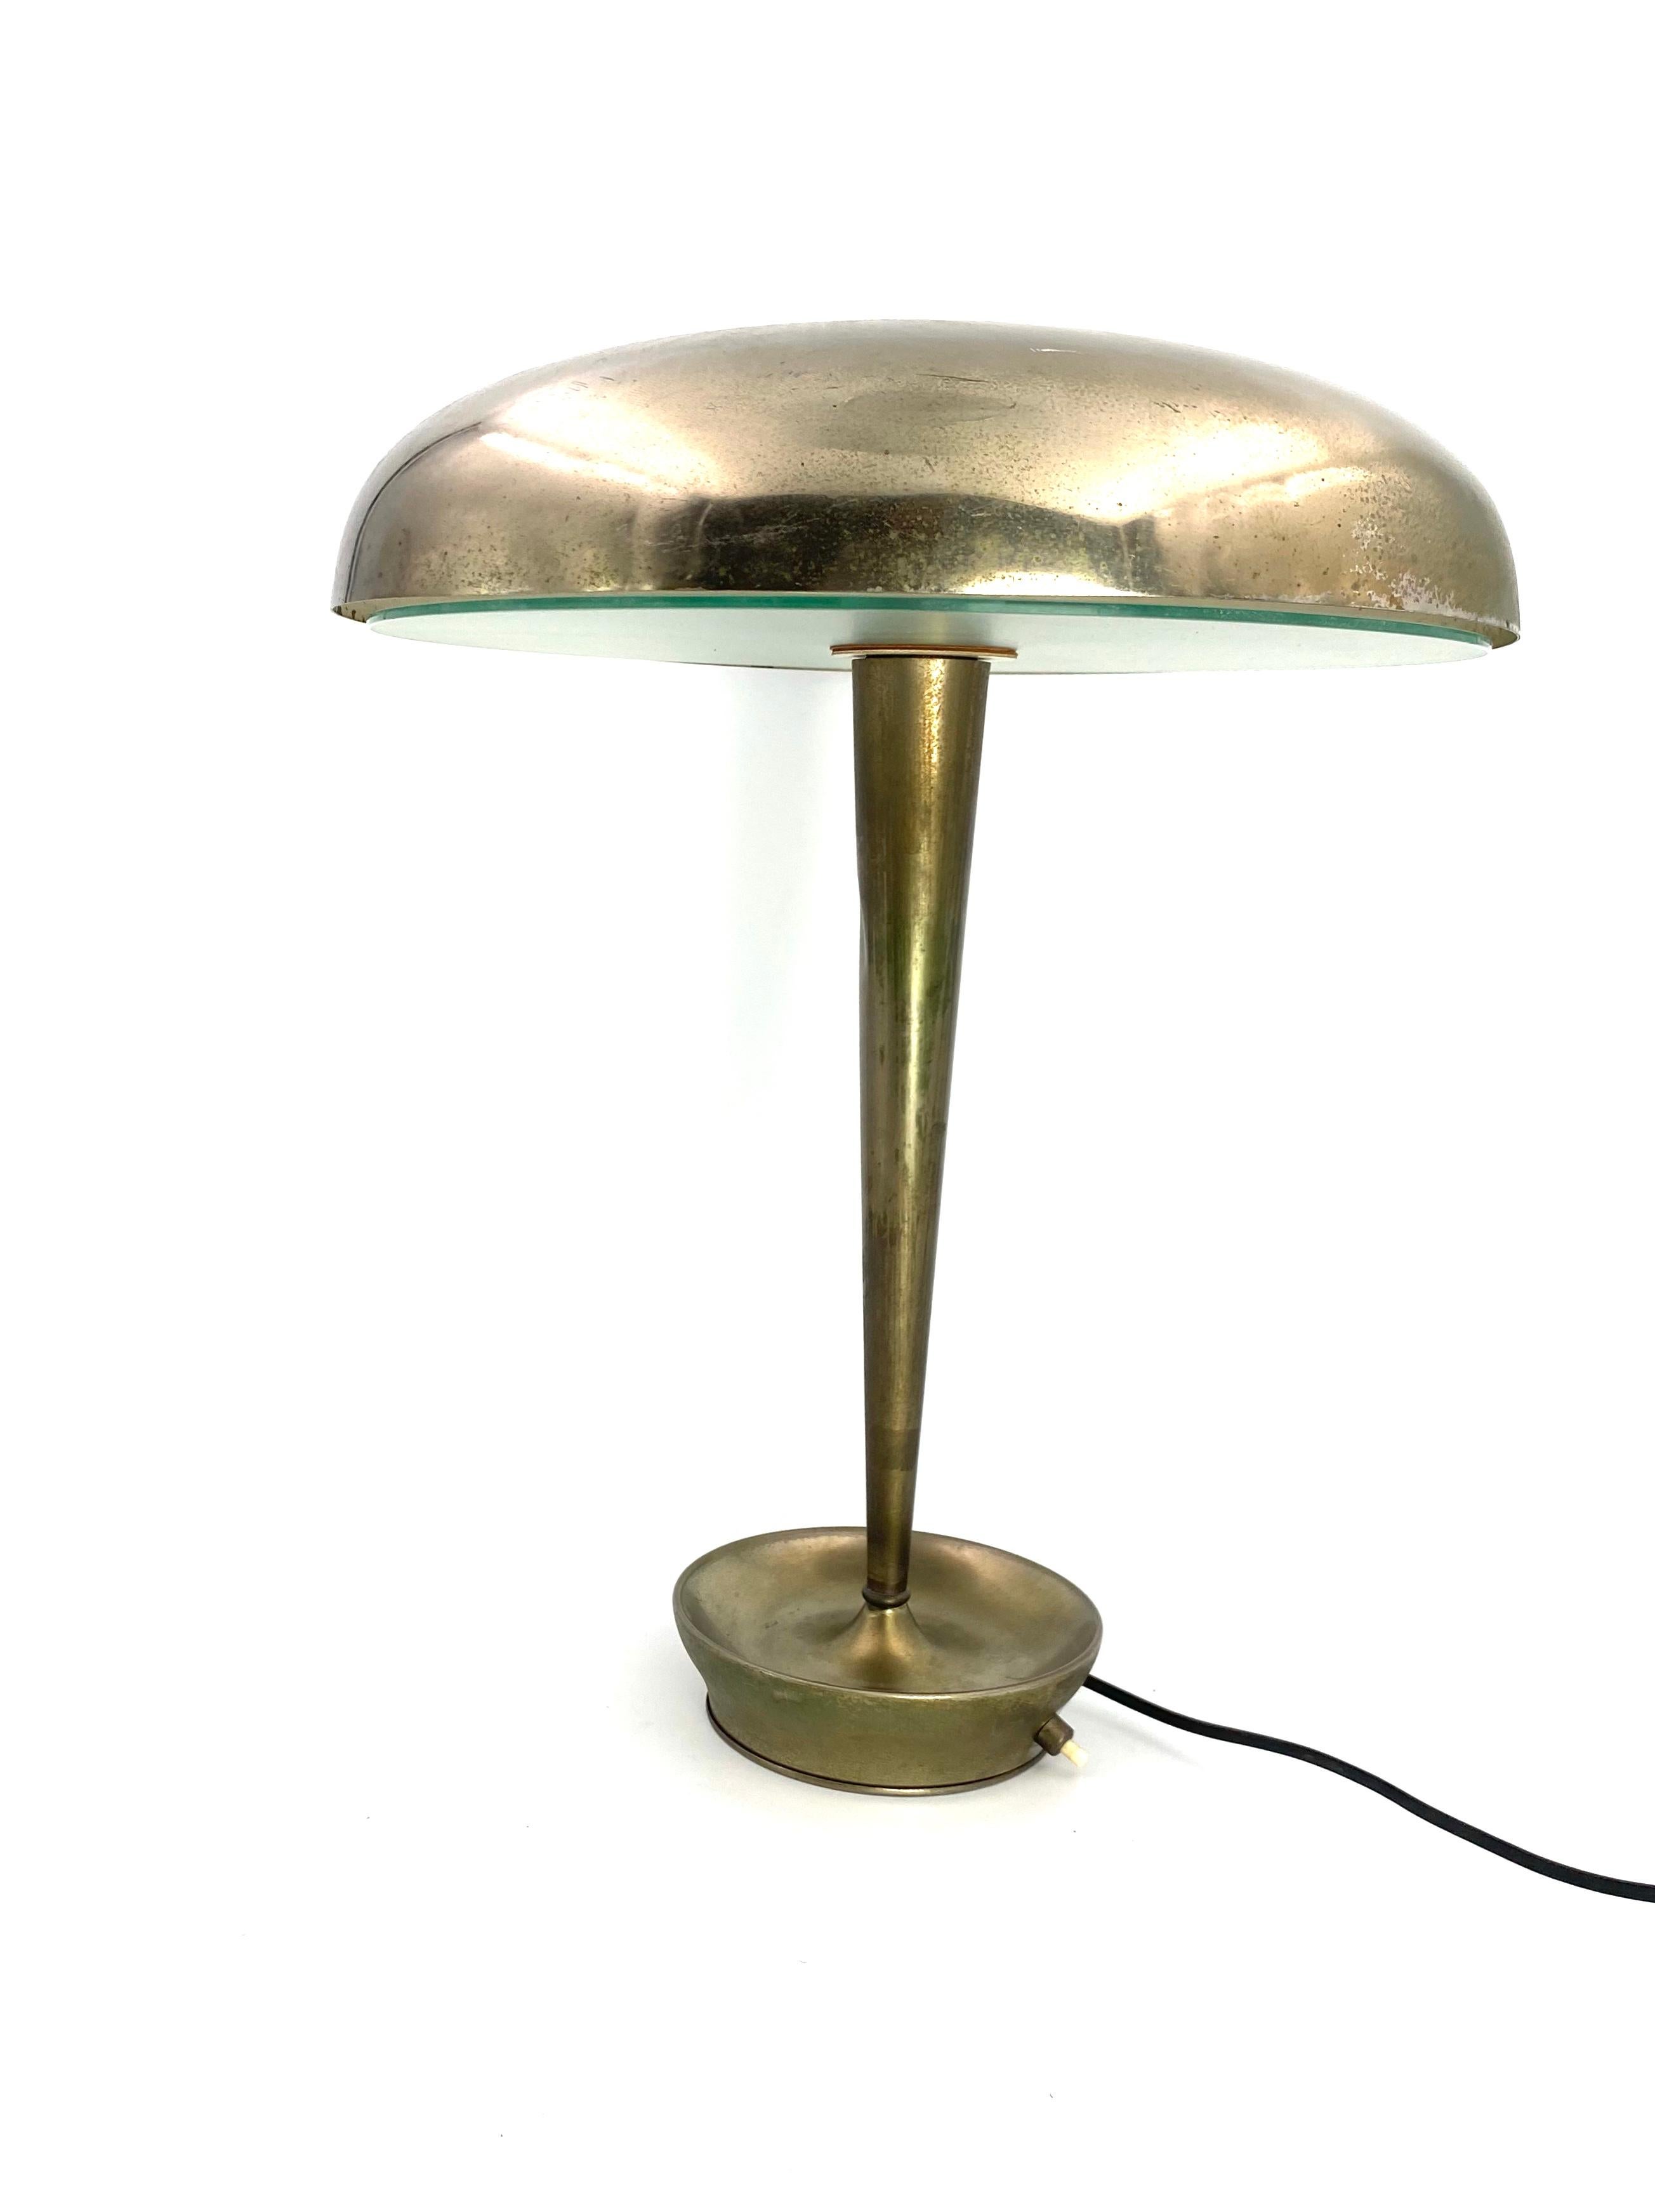 Stilnovo Desk Lamp Mod. D 4639, Stilnovo, Milan Italy, circa 1950s For Sale 8